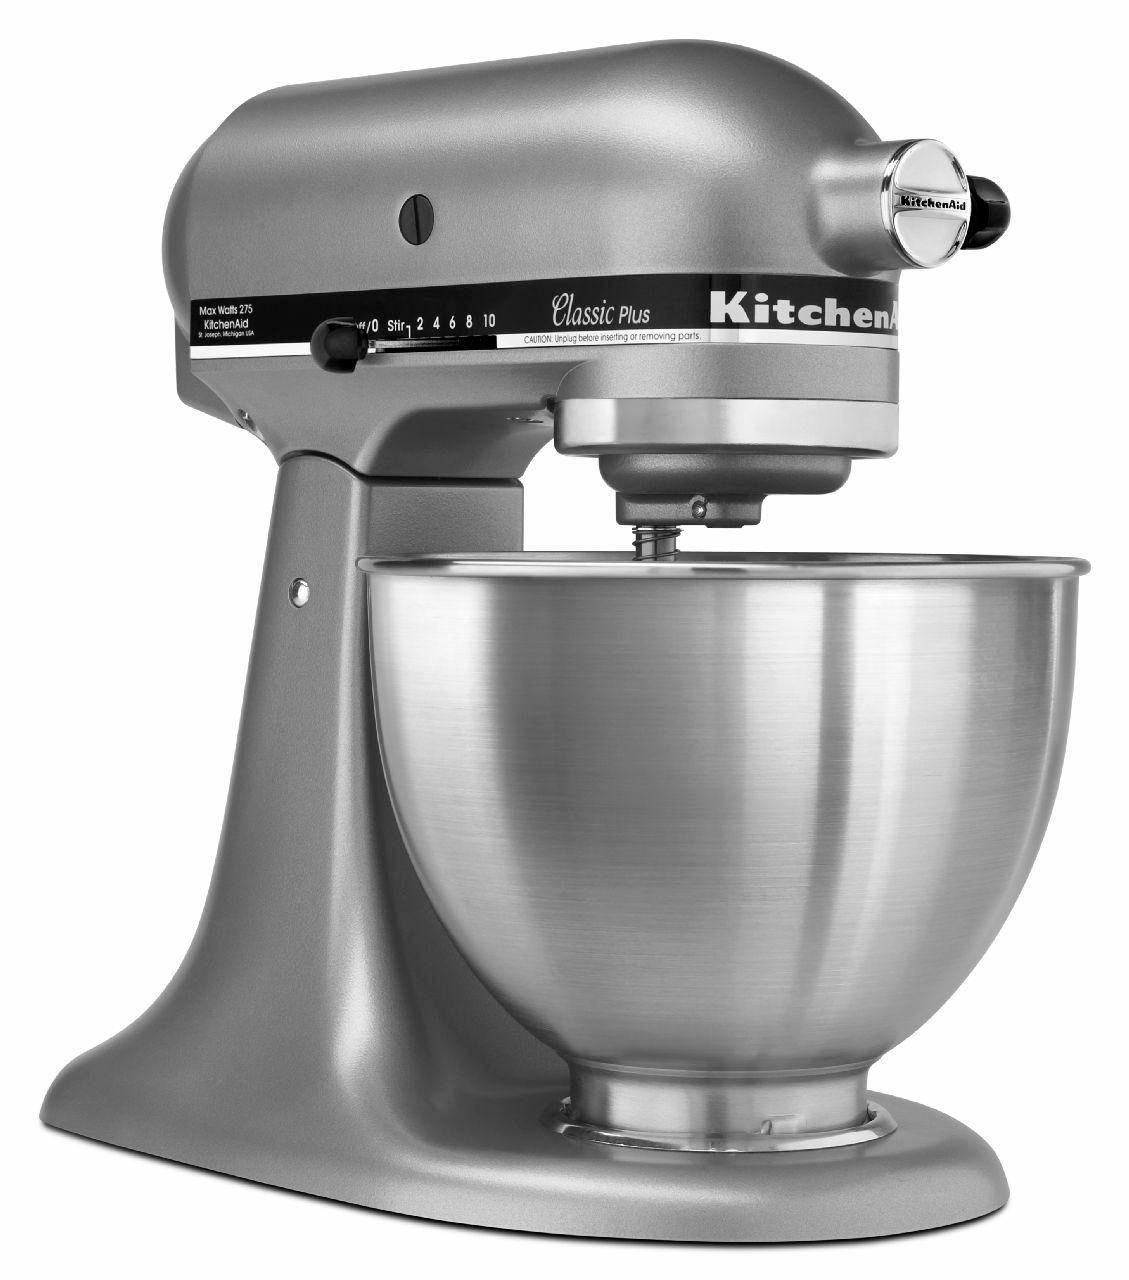 KitchenAid 275w KSM75SL Classic Plus Stand Mixer | Walmart ...
